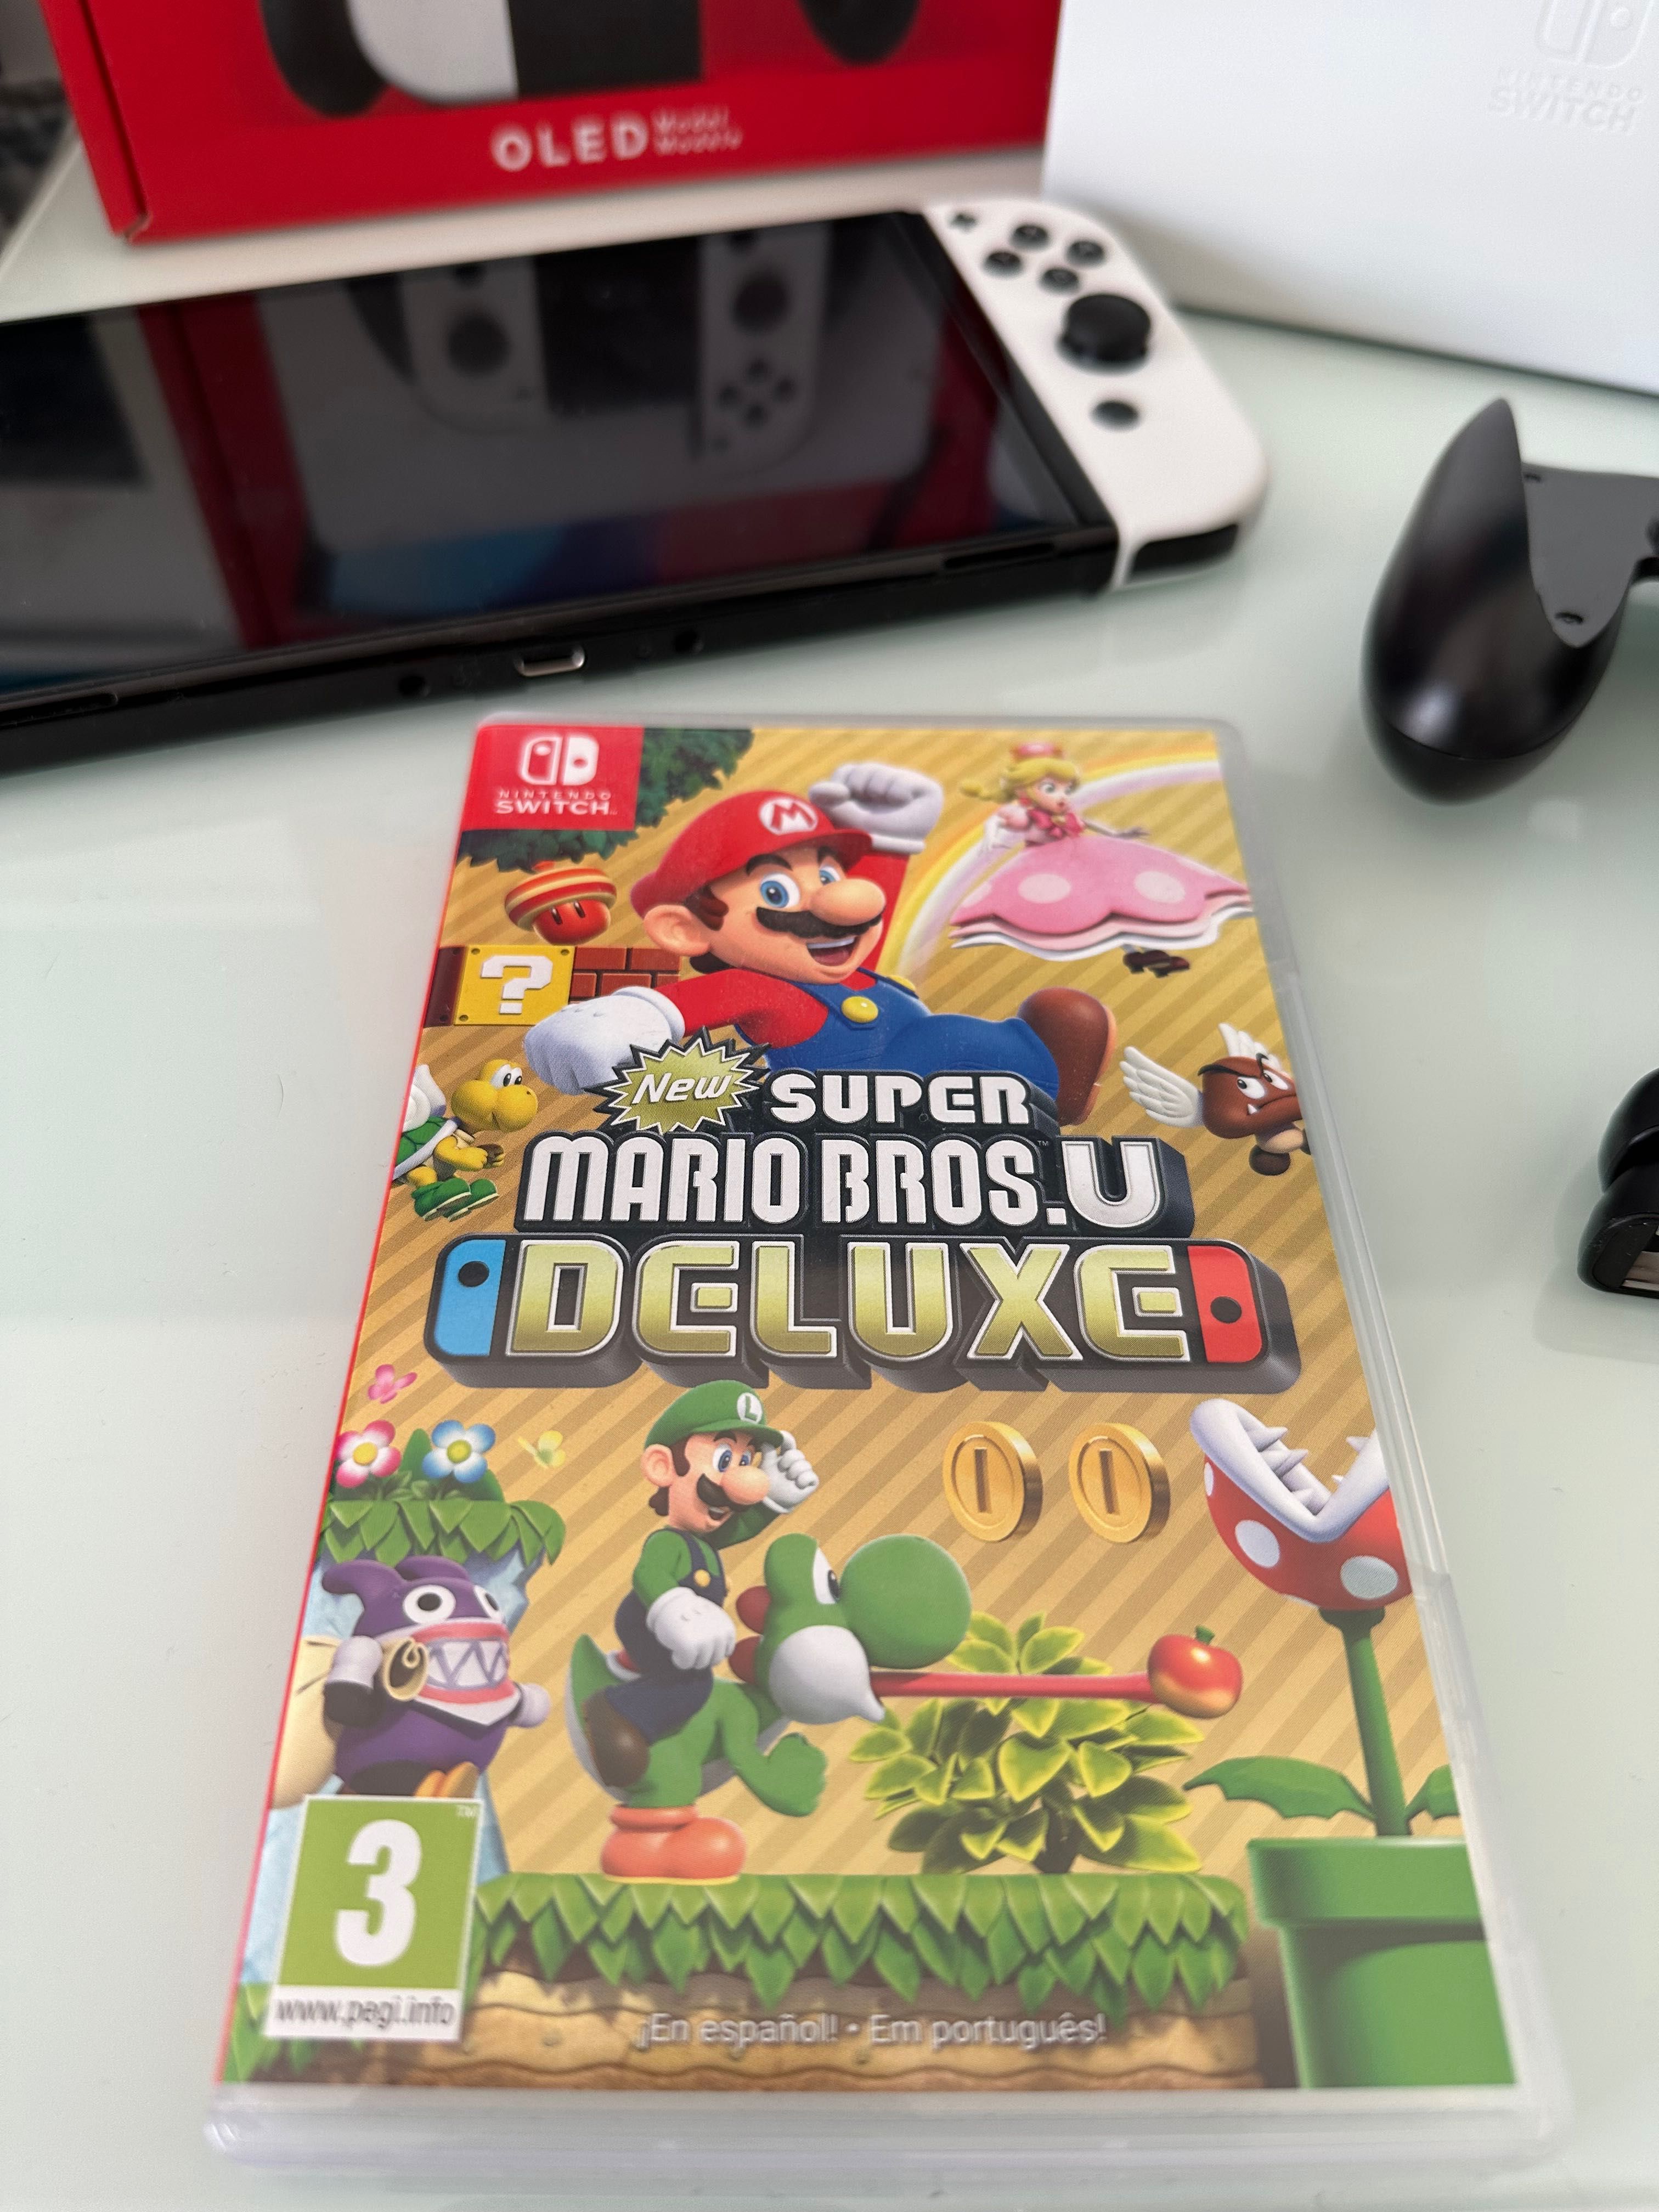 Switch Oled + Mario Bros U deluxe